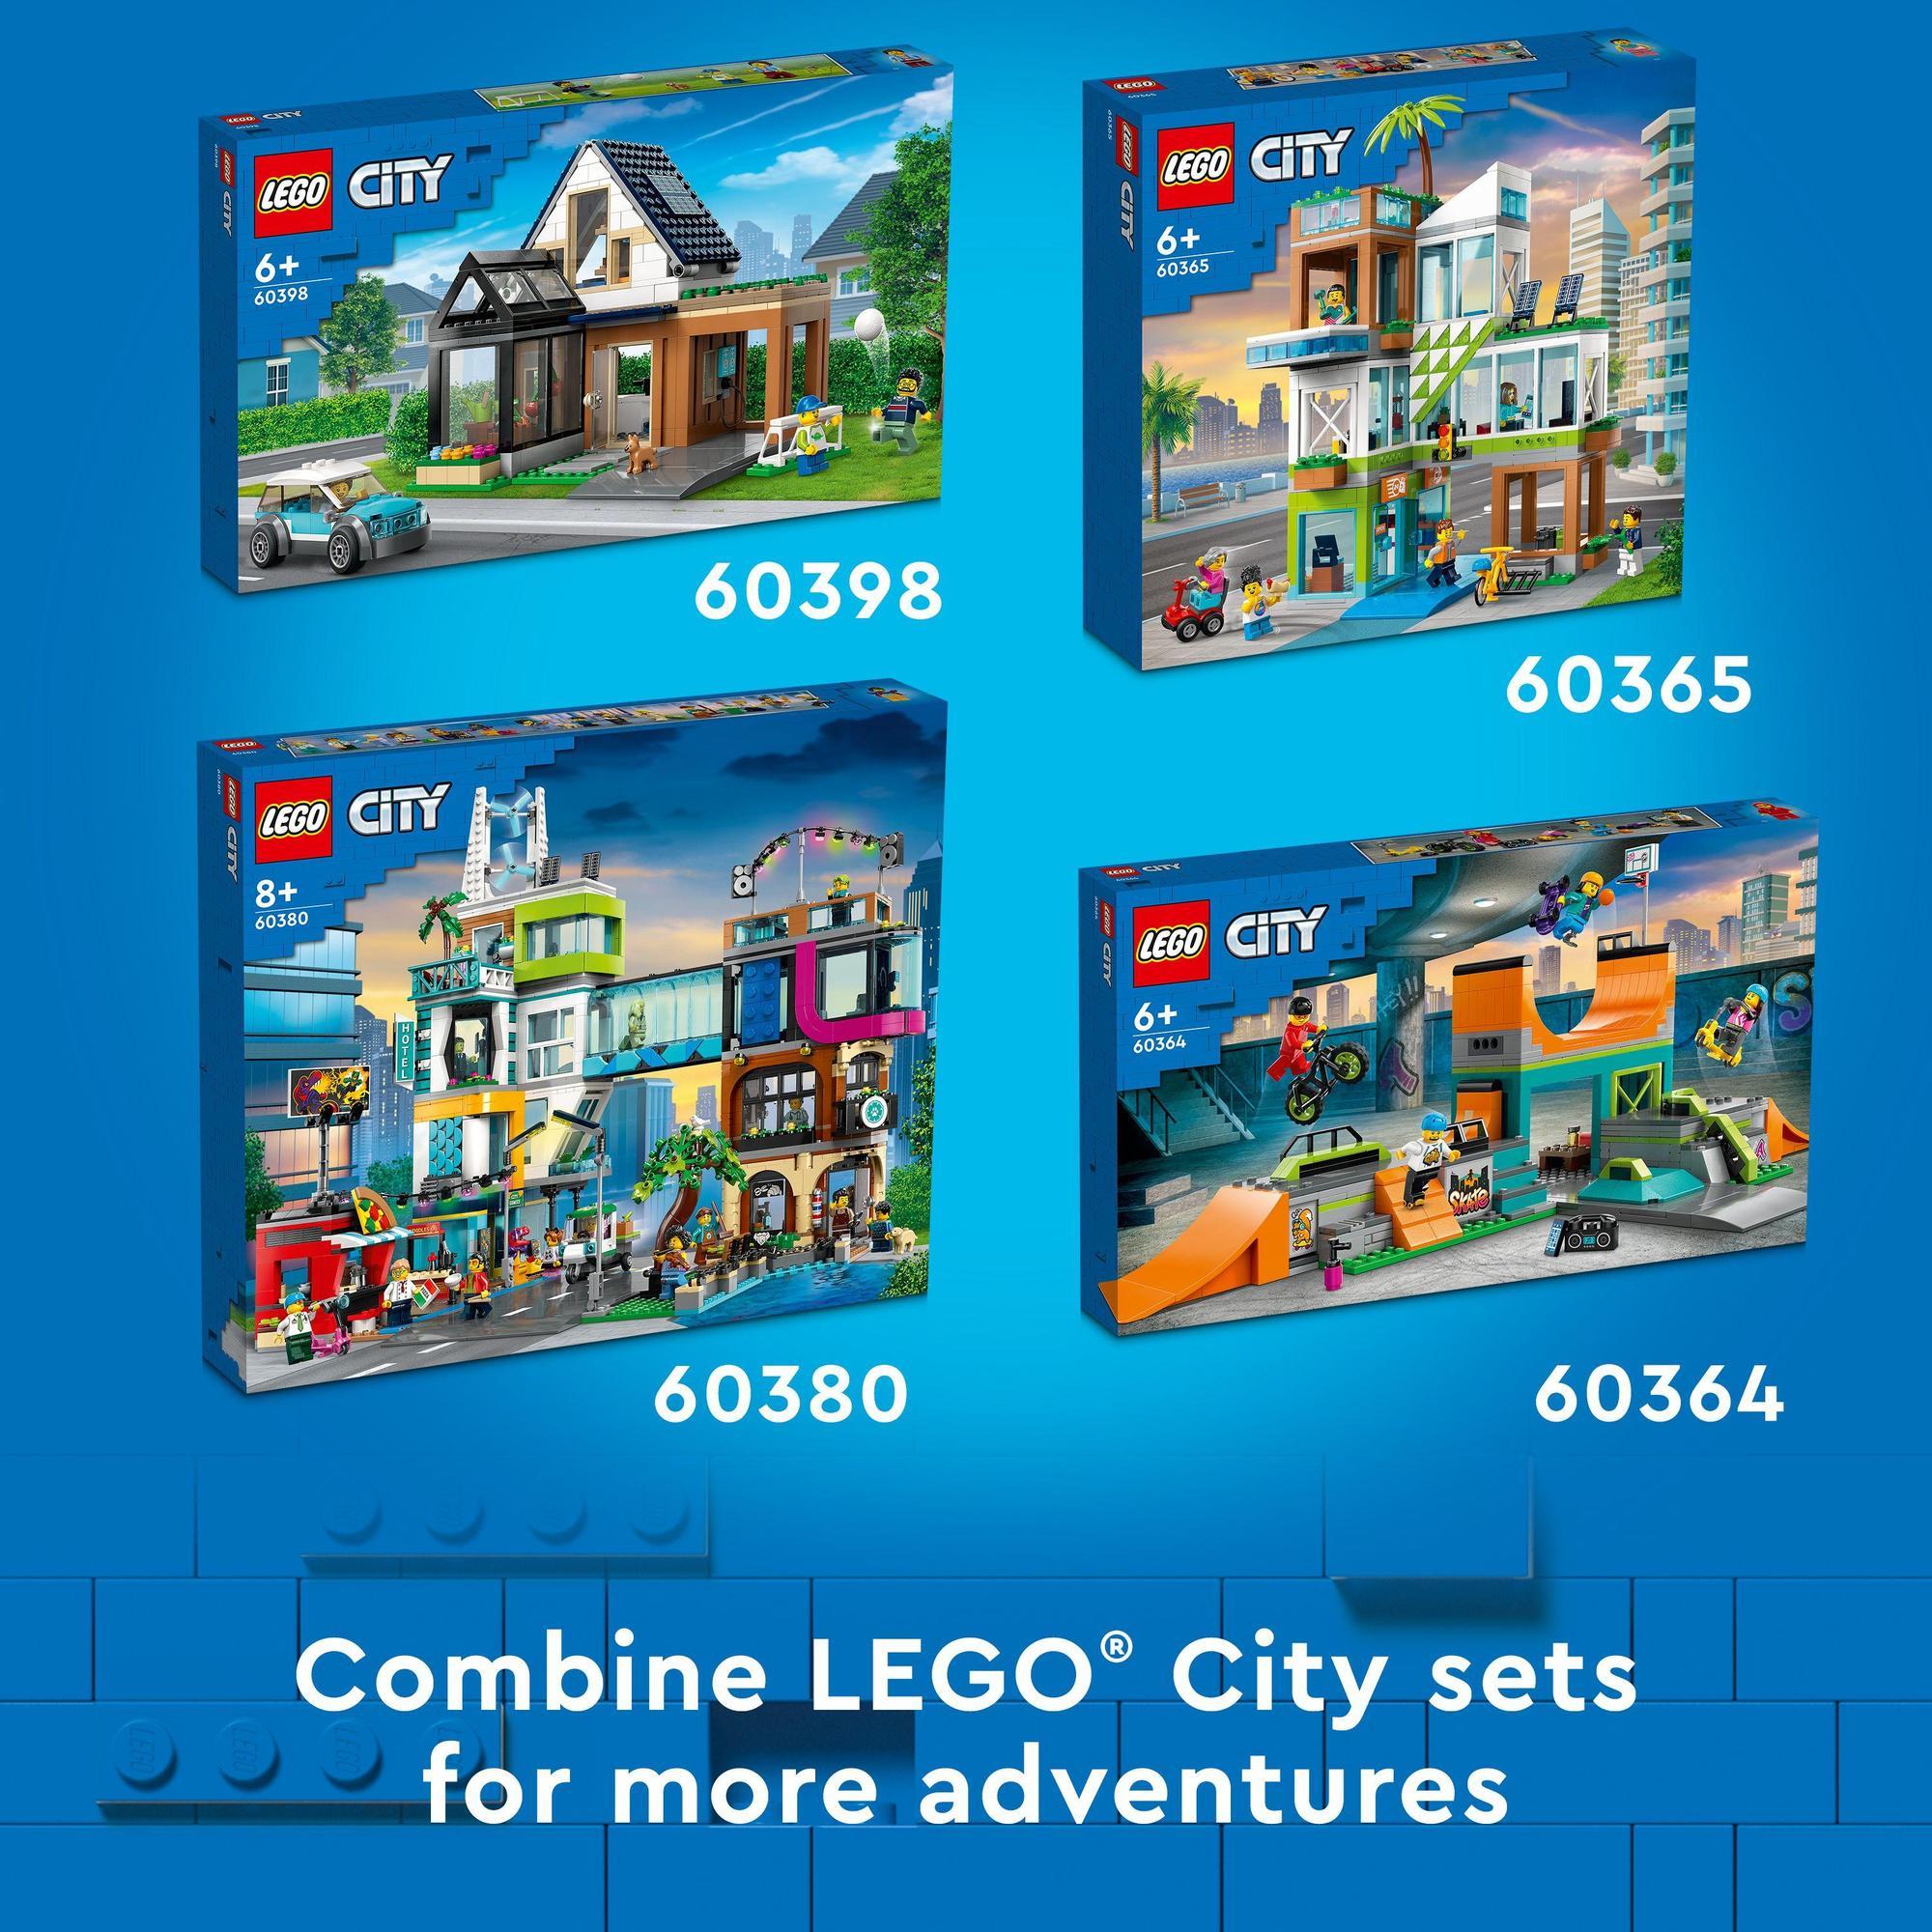 LEGO City 60363 Đồ chơi lắp ráp Cửa hàng kem thành phố (296 chi tiết)